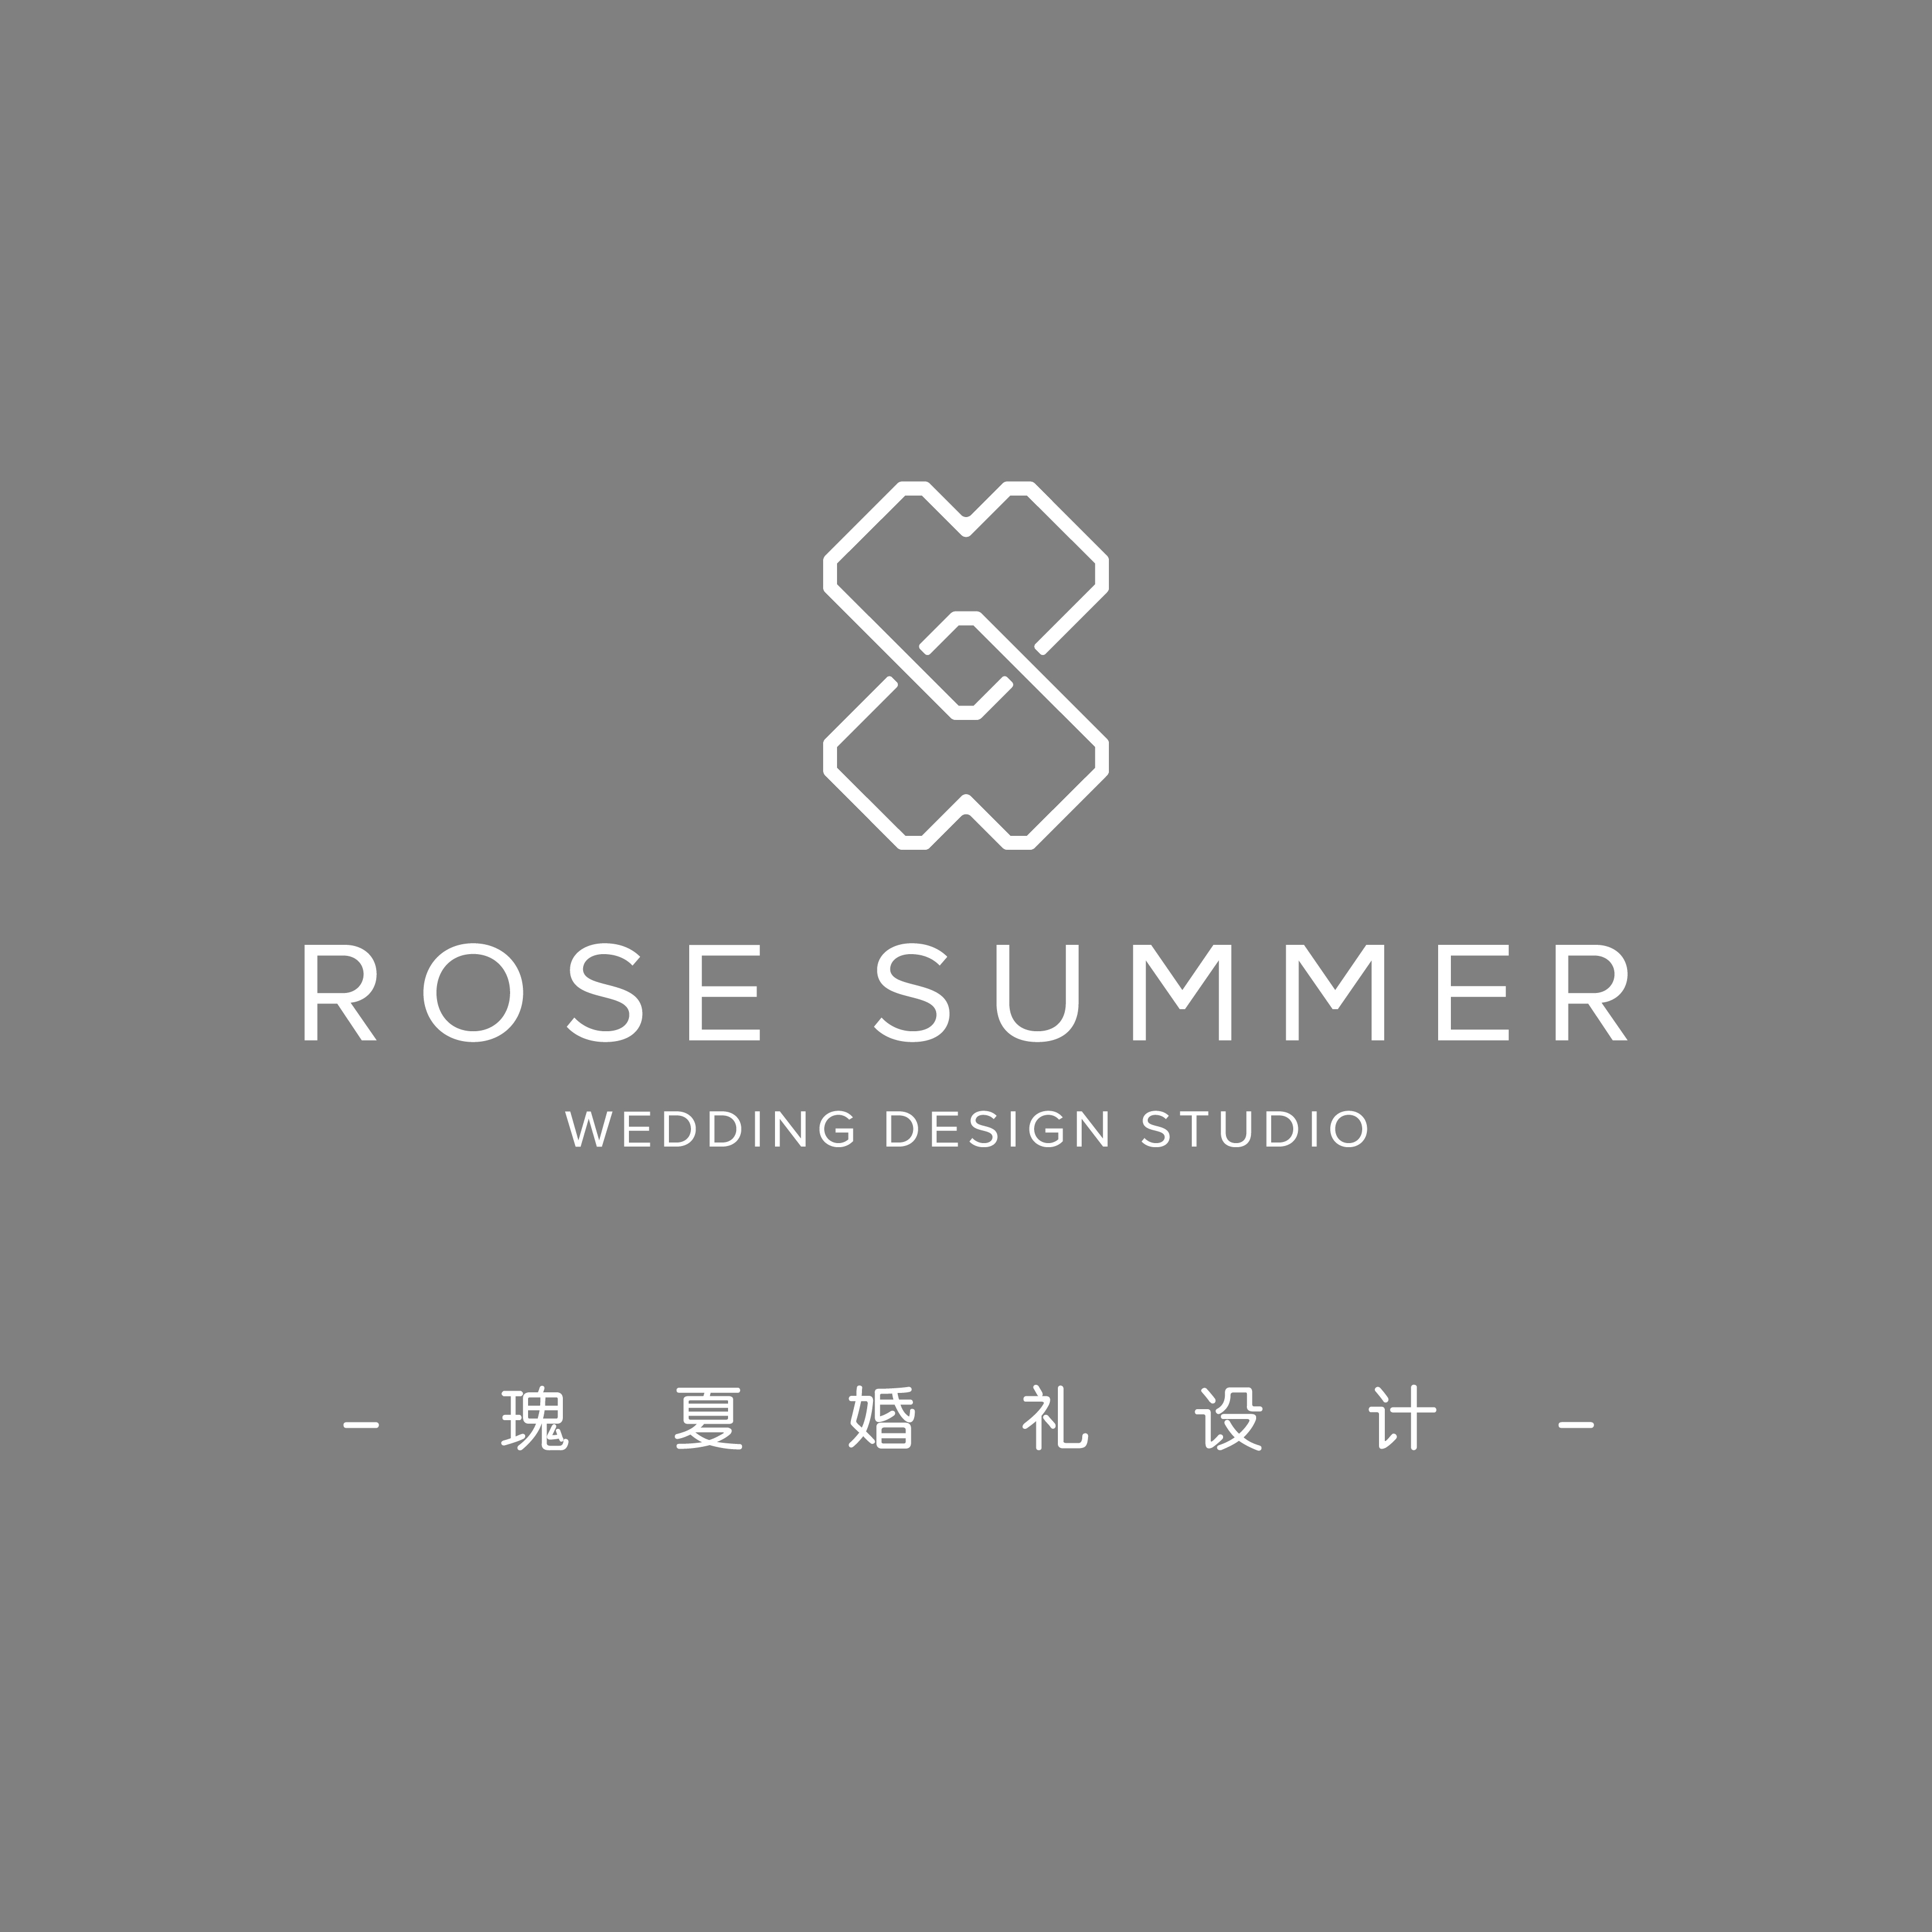 瑰夏wedding design studio